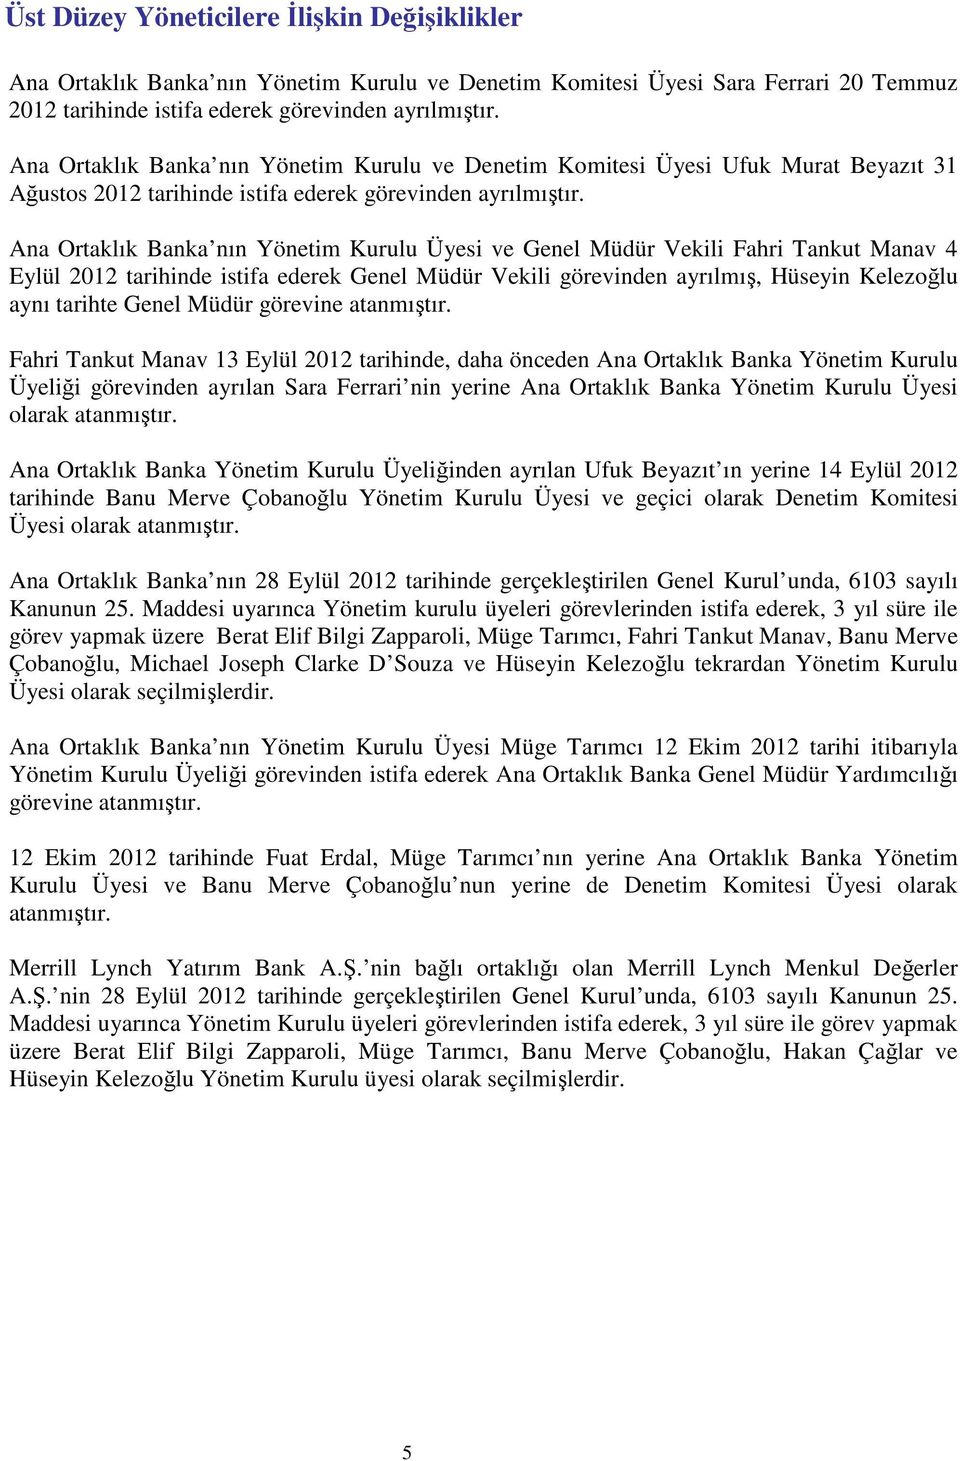 Ana Ortaklık Banka nın Yönetim Kurulu Üyesi ve Genel Müdür Vekili Fahri Tankut Manav 4 Eylül 2012 tarihinde istifa ederek Genel Müdür Vekili görevinden ayrılmış, Hüseyin Kelezoğlu aynı tarihte Genel